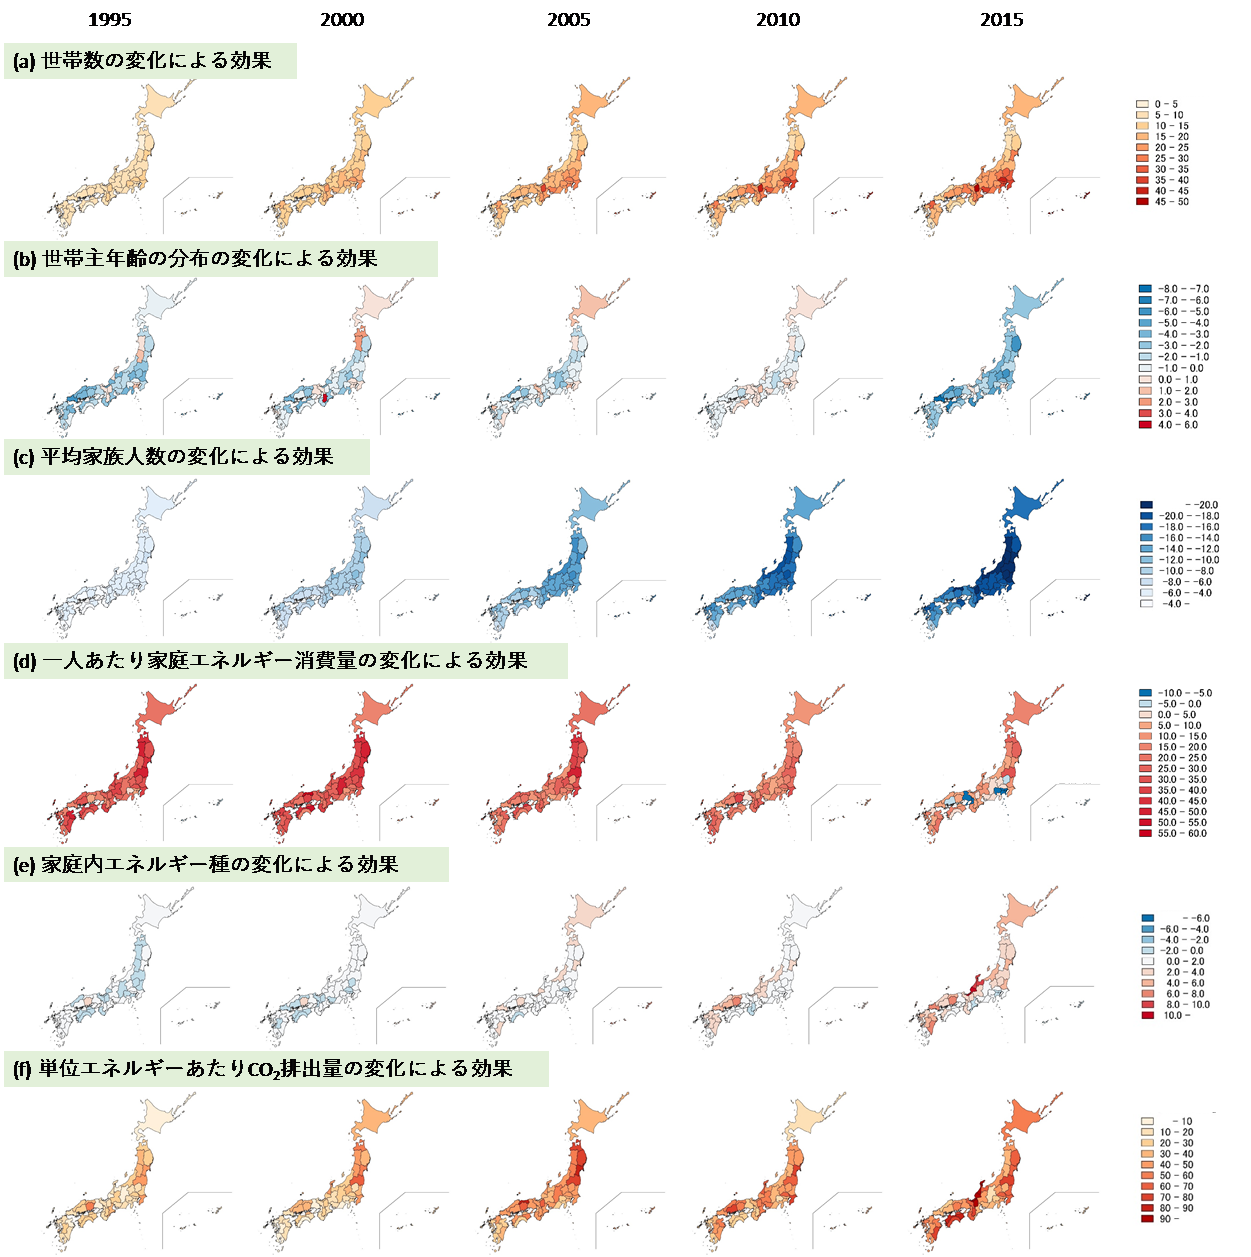 1990年を基準としたときの1995年から2015年における都道府県別家庭CO2排出量の変化率 (%)を6つの要因別に分解したグラフ